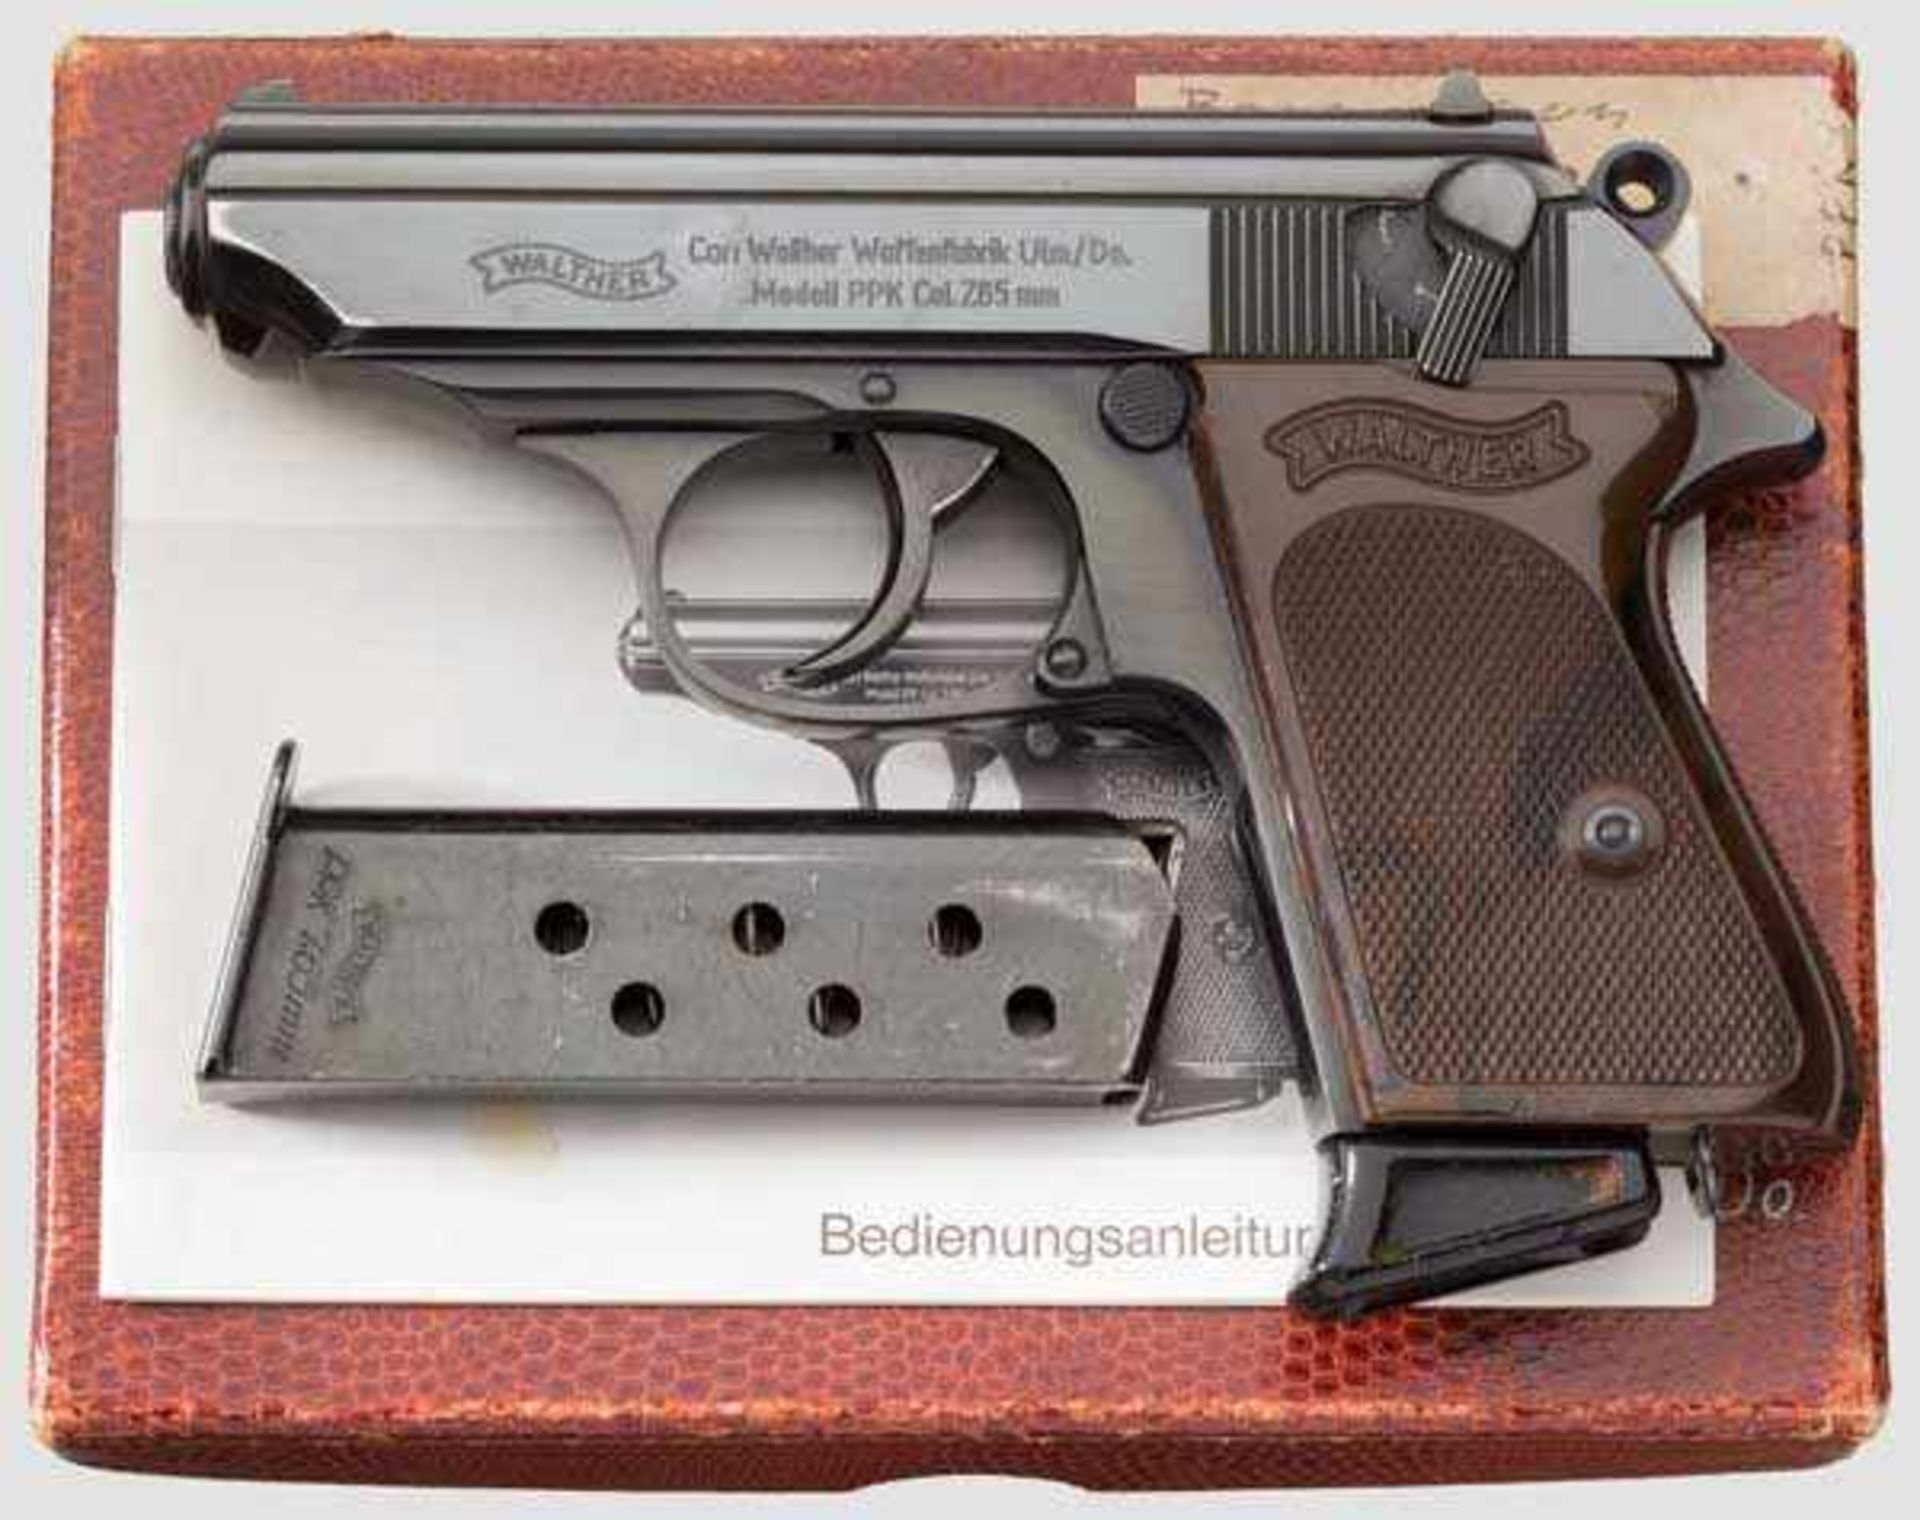 Walther PPK, Ulm, im Karton, Werkschutz VW Kal. 7,65 mm, Nr. 128136. Blanker Lauf. Siebenschüssig.